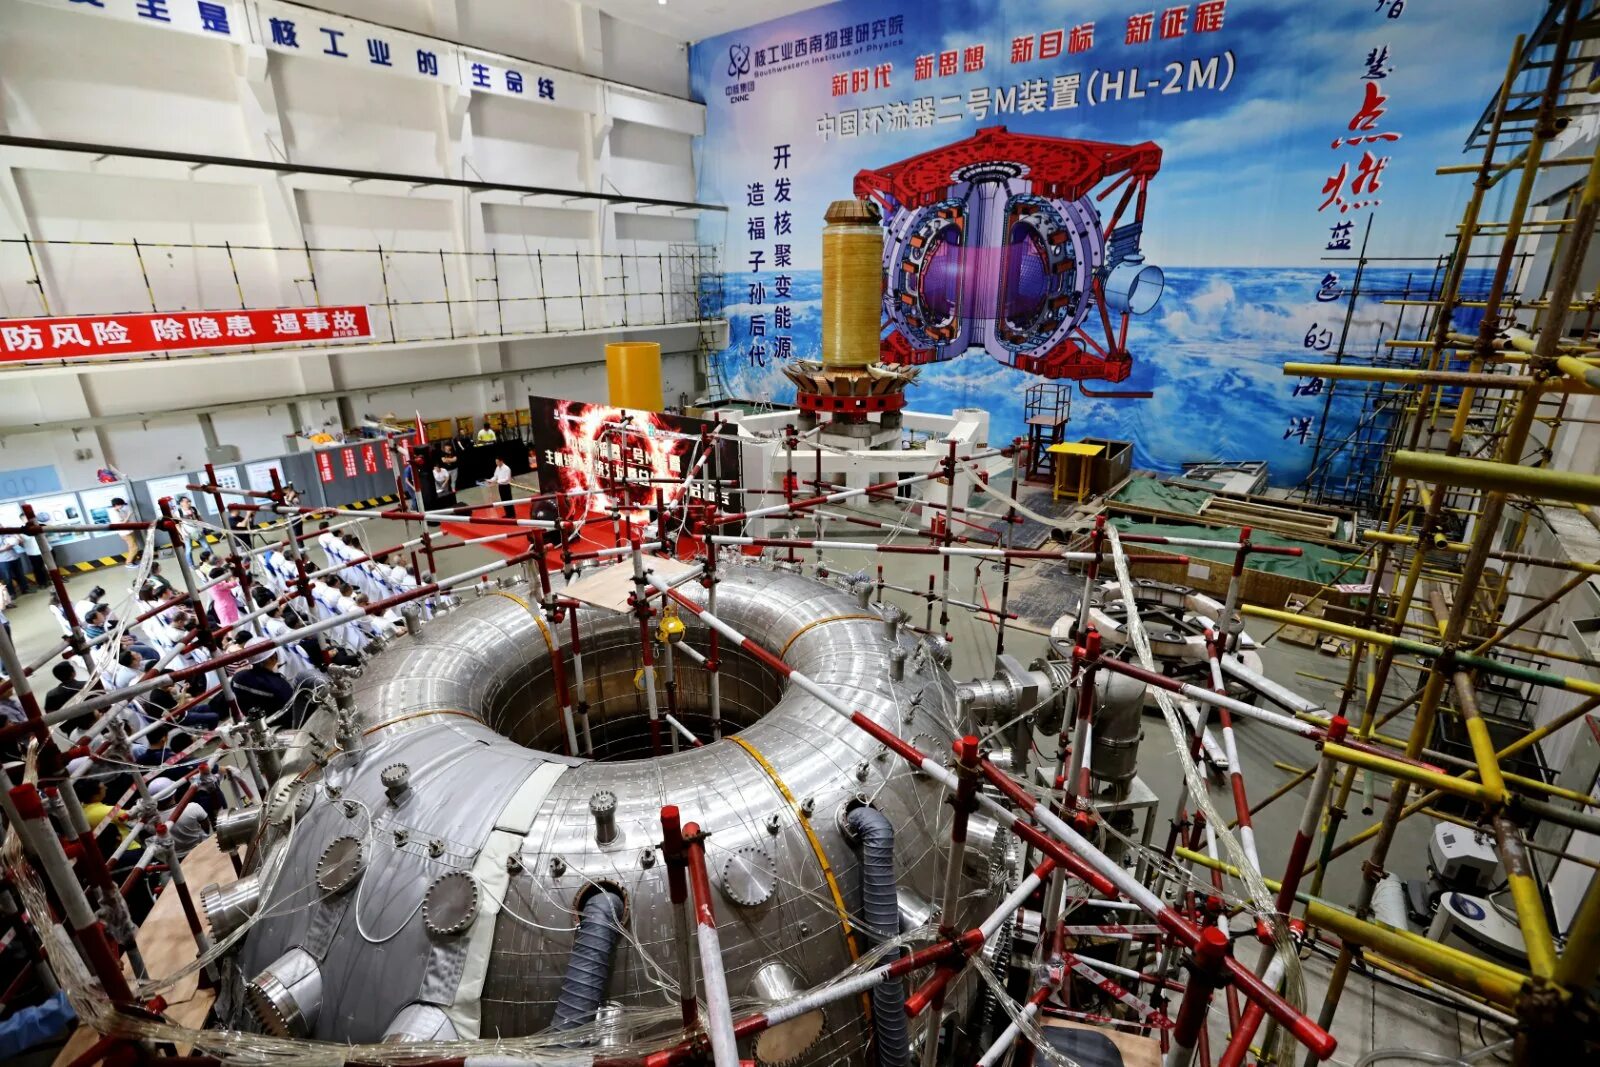 Запуск ядерного реактора. Hl-2m токамак. Реактор hl-2m Tokamak. Реактор Китай токамак. Термоядерный реактор токамак в Китае.